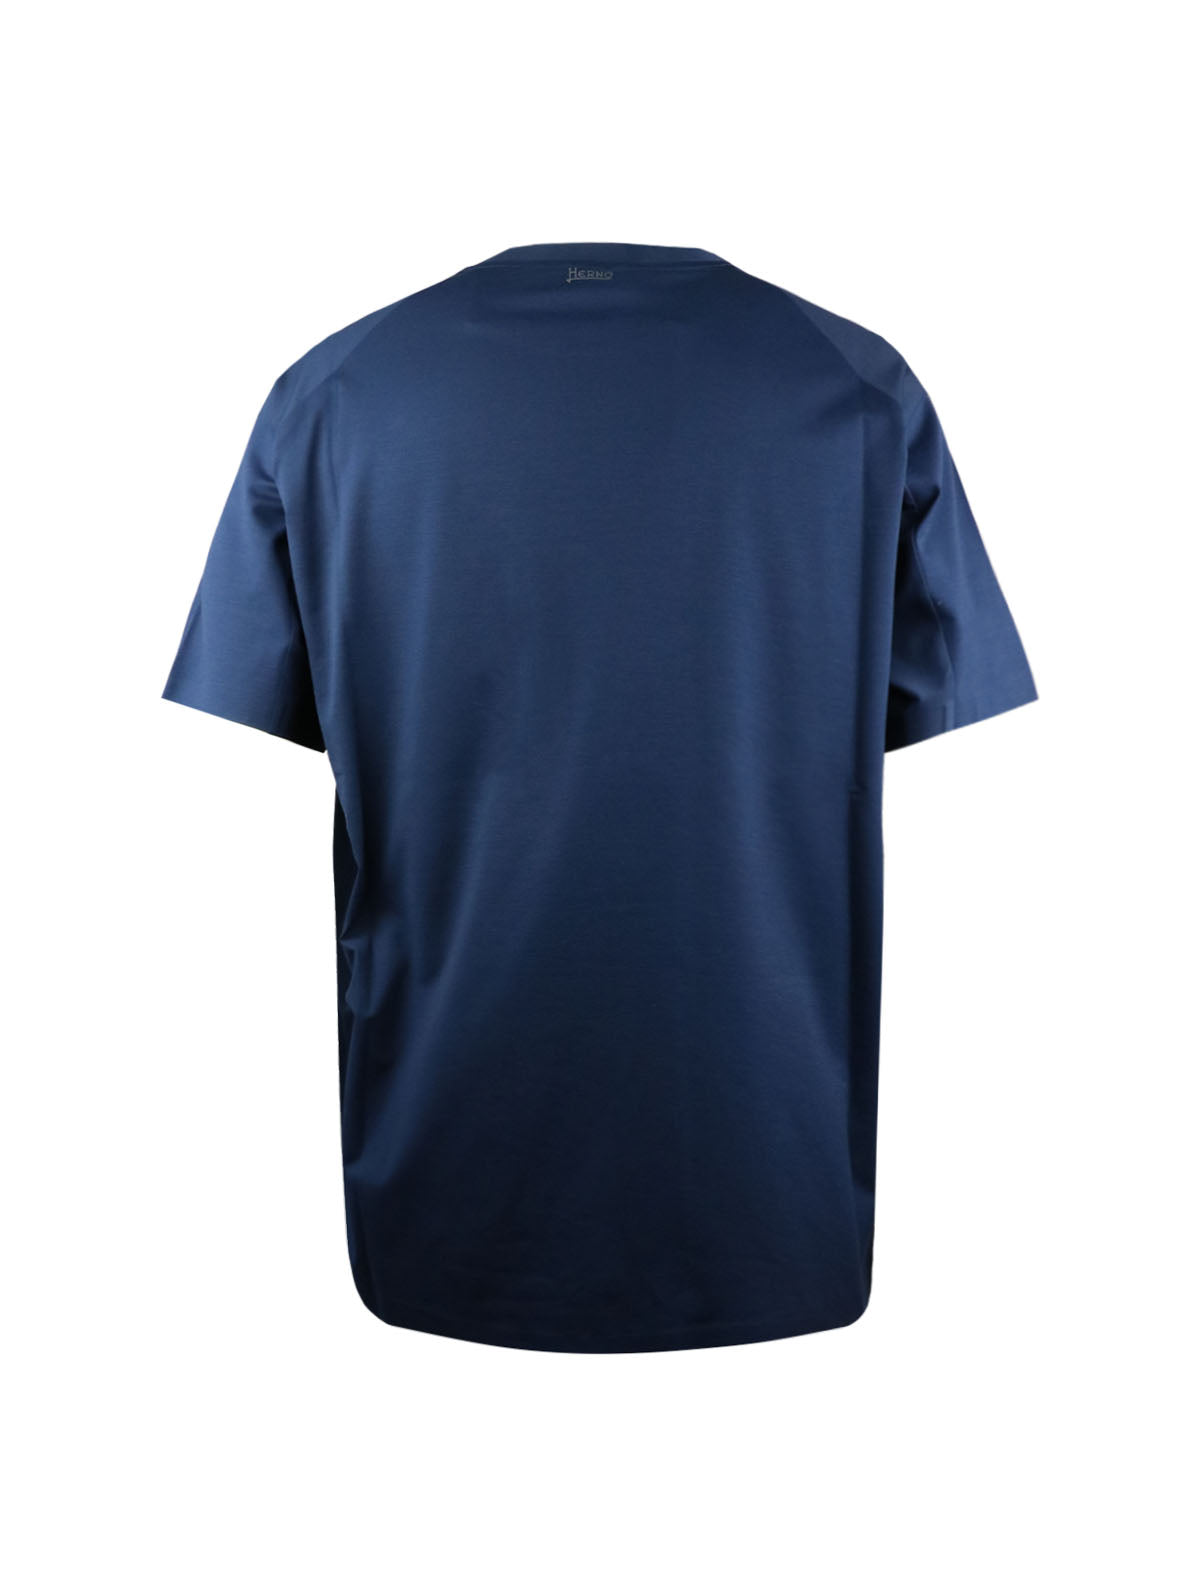 HERNO Superfine Cotton Stretch T-Shirt in Blue Navy